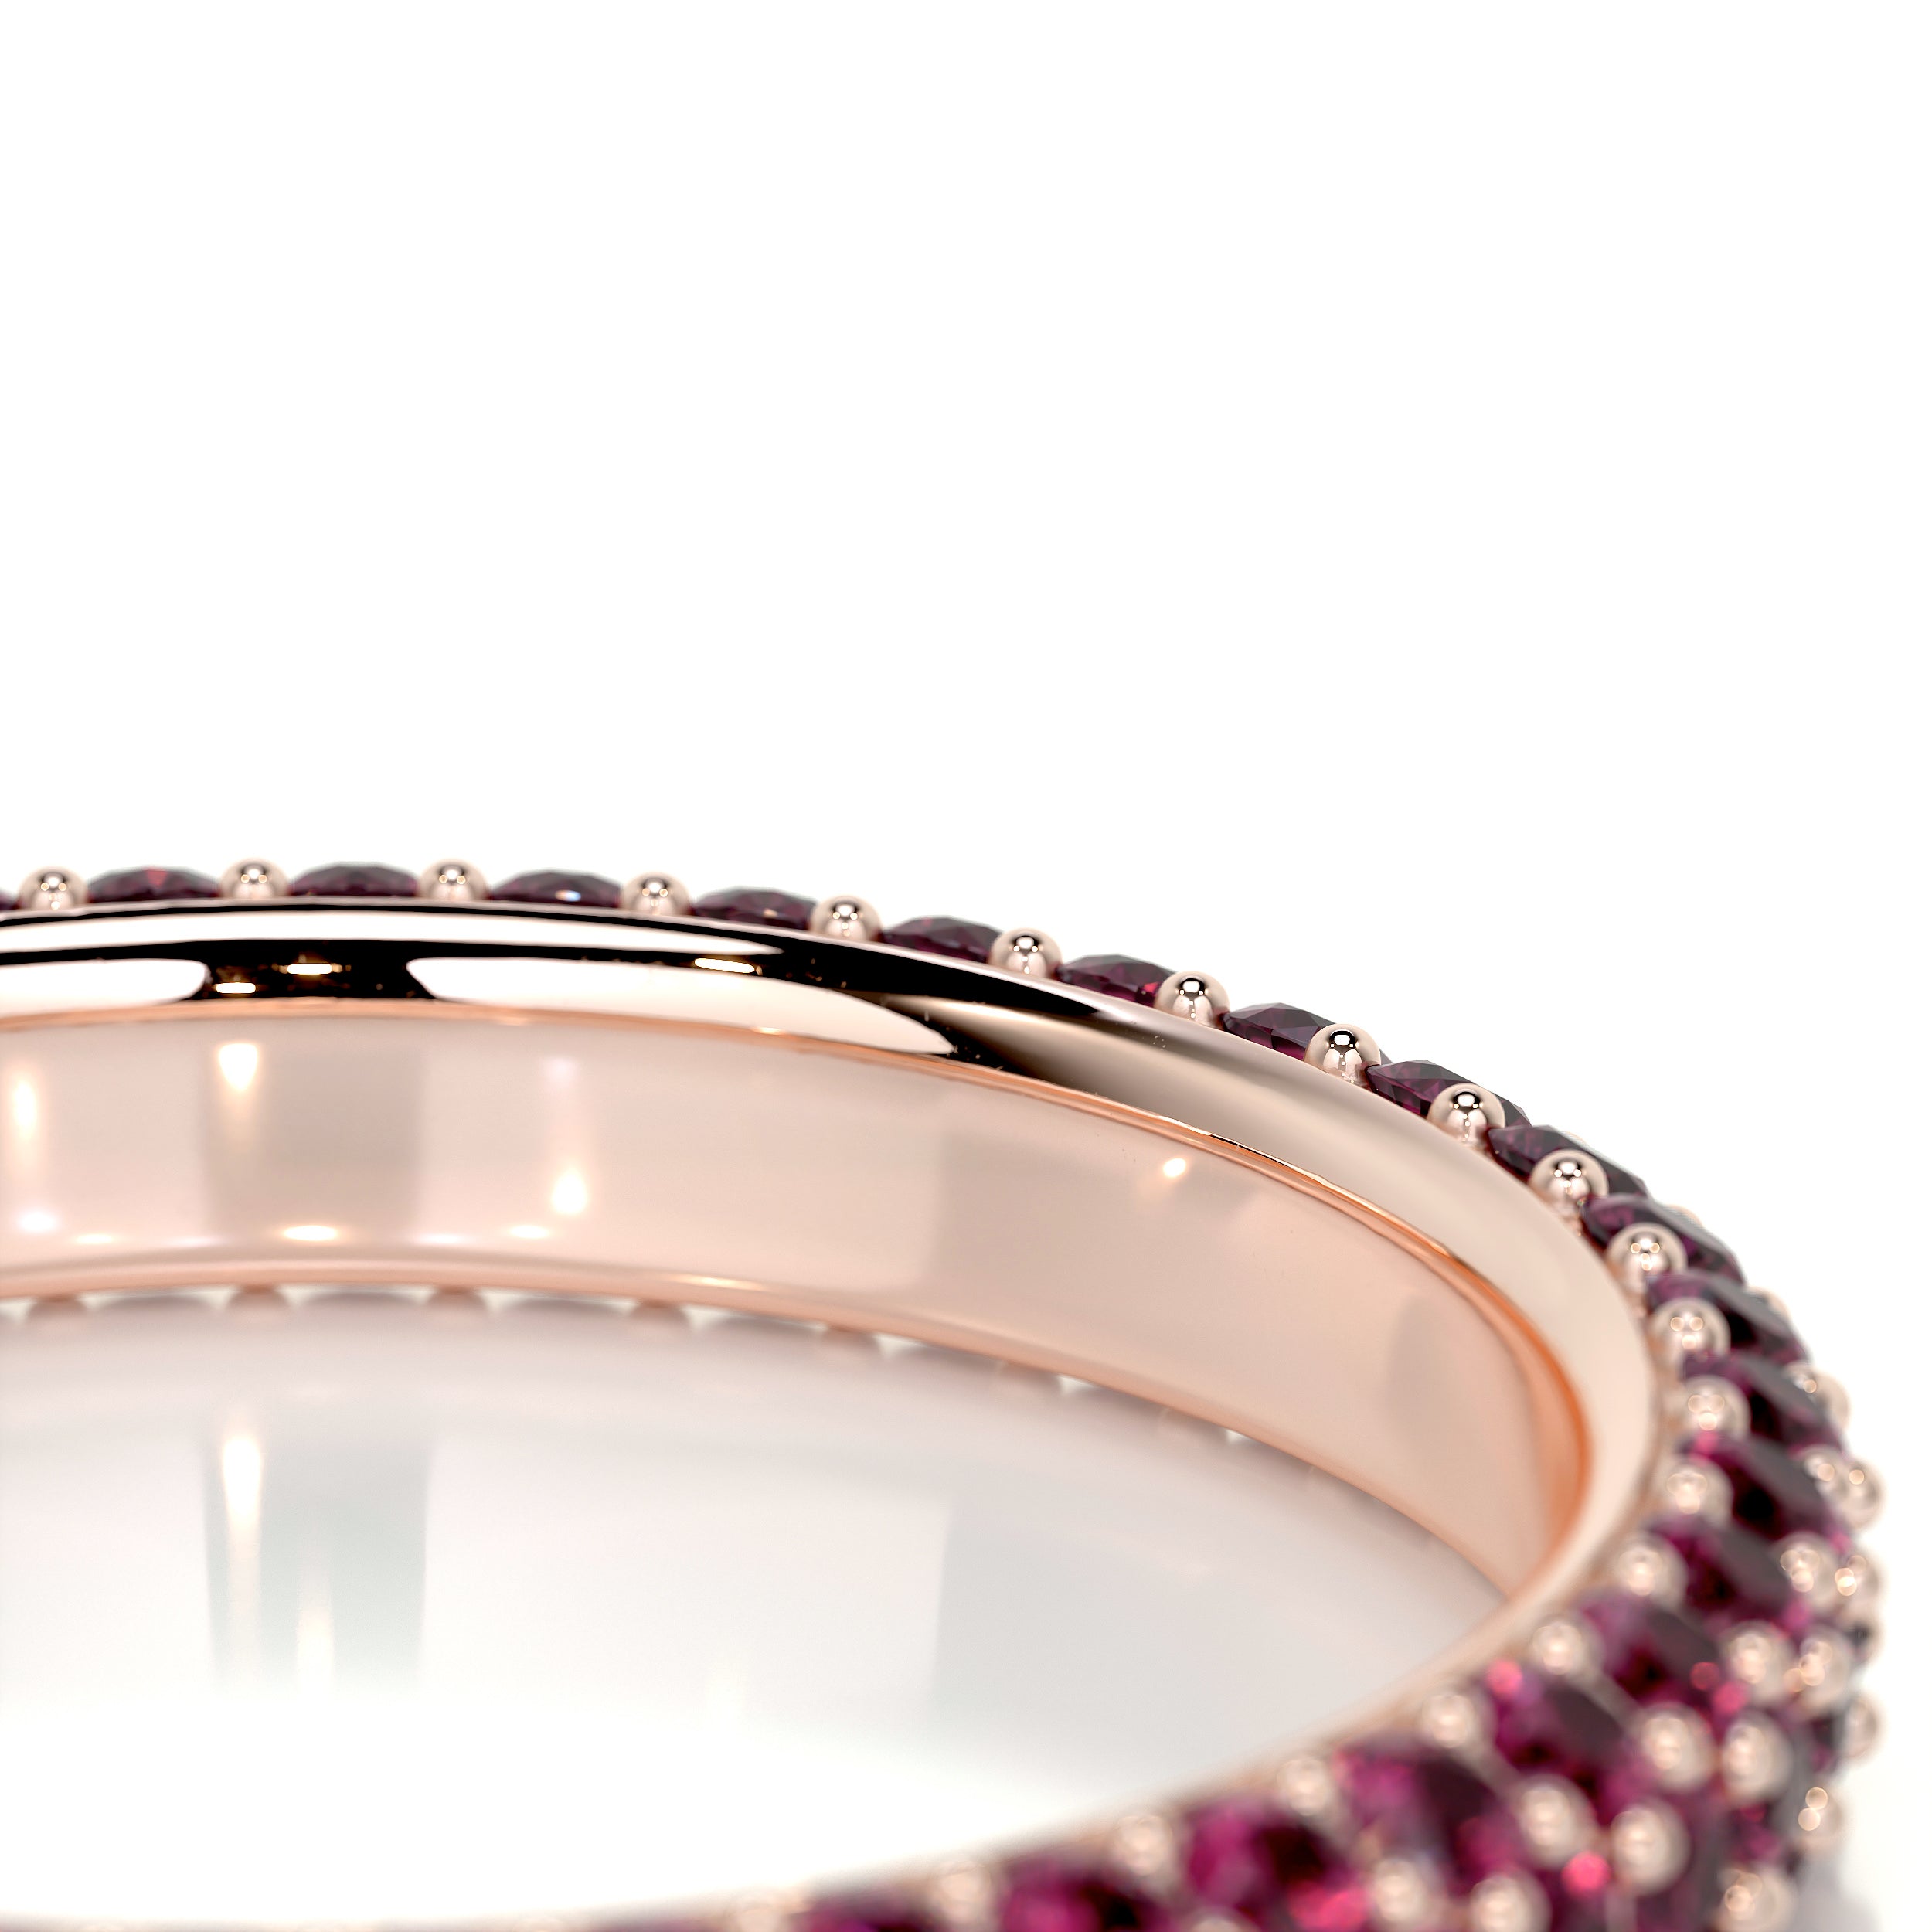 Emma Red Gemstone Wedding Ring   (1.25 Carat) -14K Rose Gold